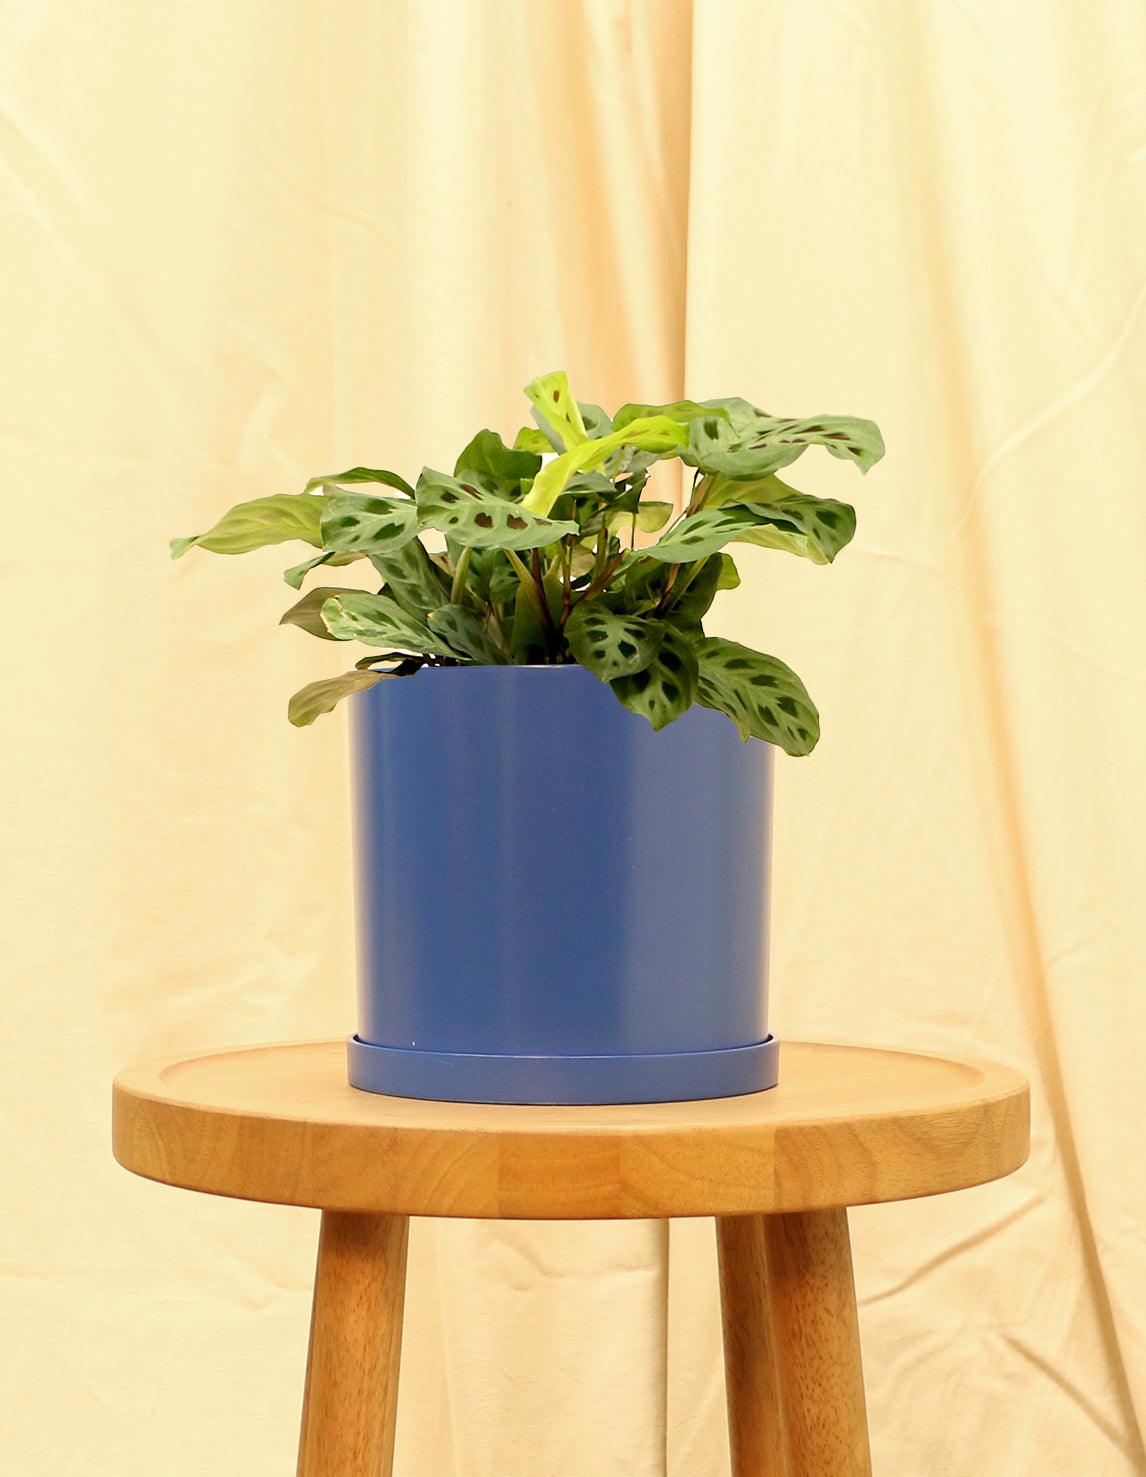 Medium Prayer Plant in blue pot.